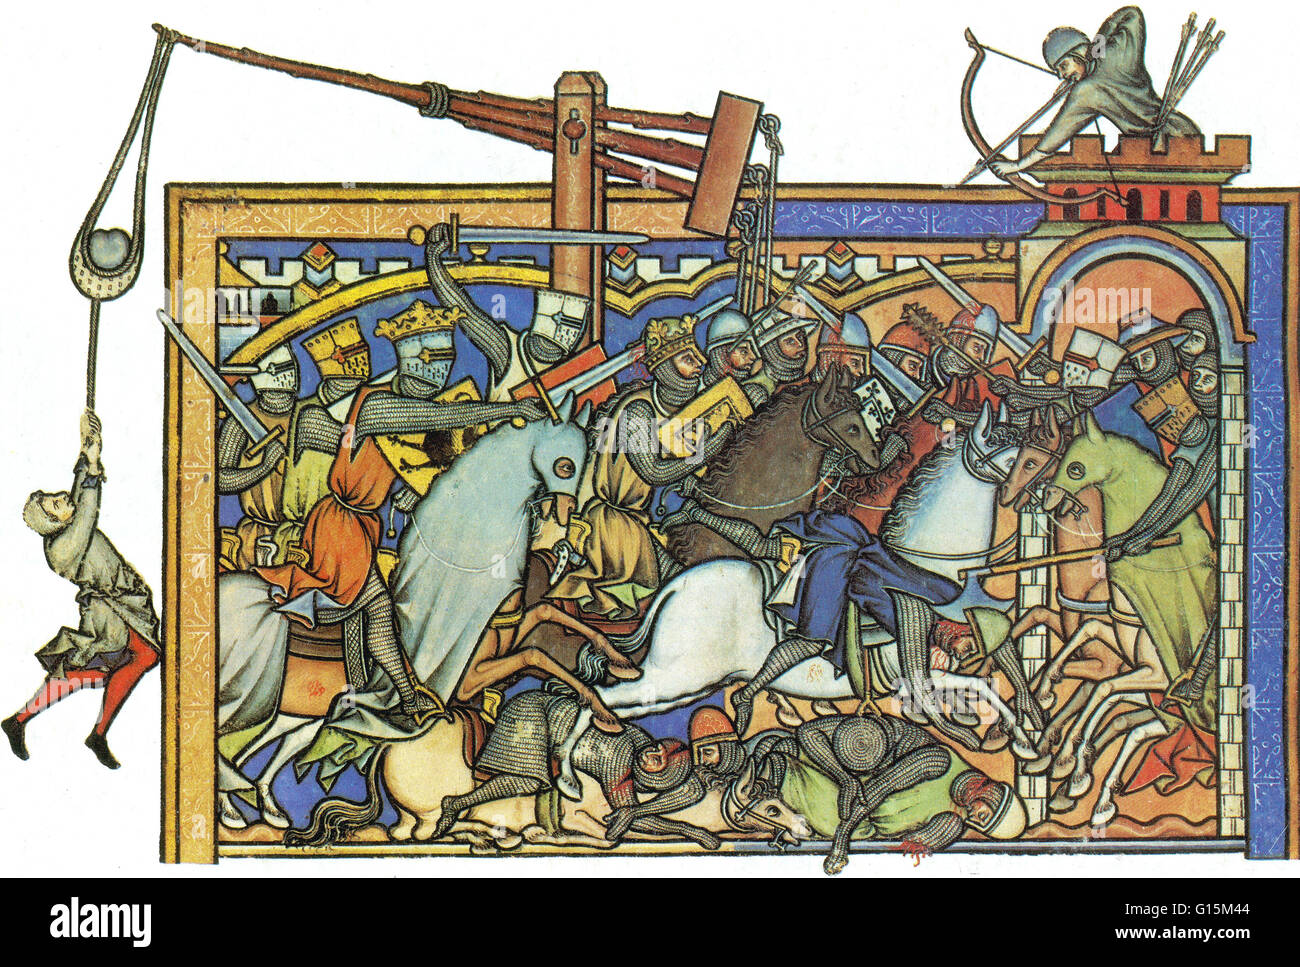 Xiii secolo miniatura mostra le armi utilizzate dai Cavalieri Templari. Catapulta (estrema sinistra), battaglia-ax (centro destra), macis (al di sopra di battaglia-ax) longbow (in alto a destra) e molti dei cavalieri sono visti brandendo la broadsword. Immagine appare nell'Crusad Foto Stock